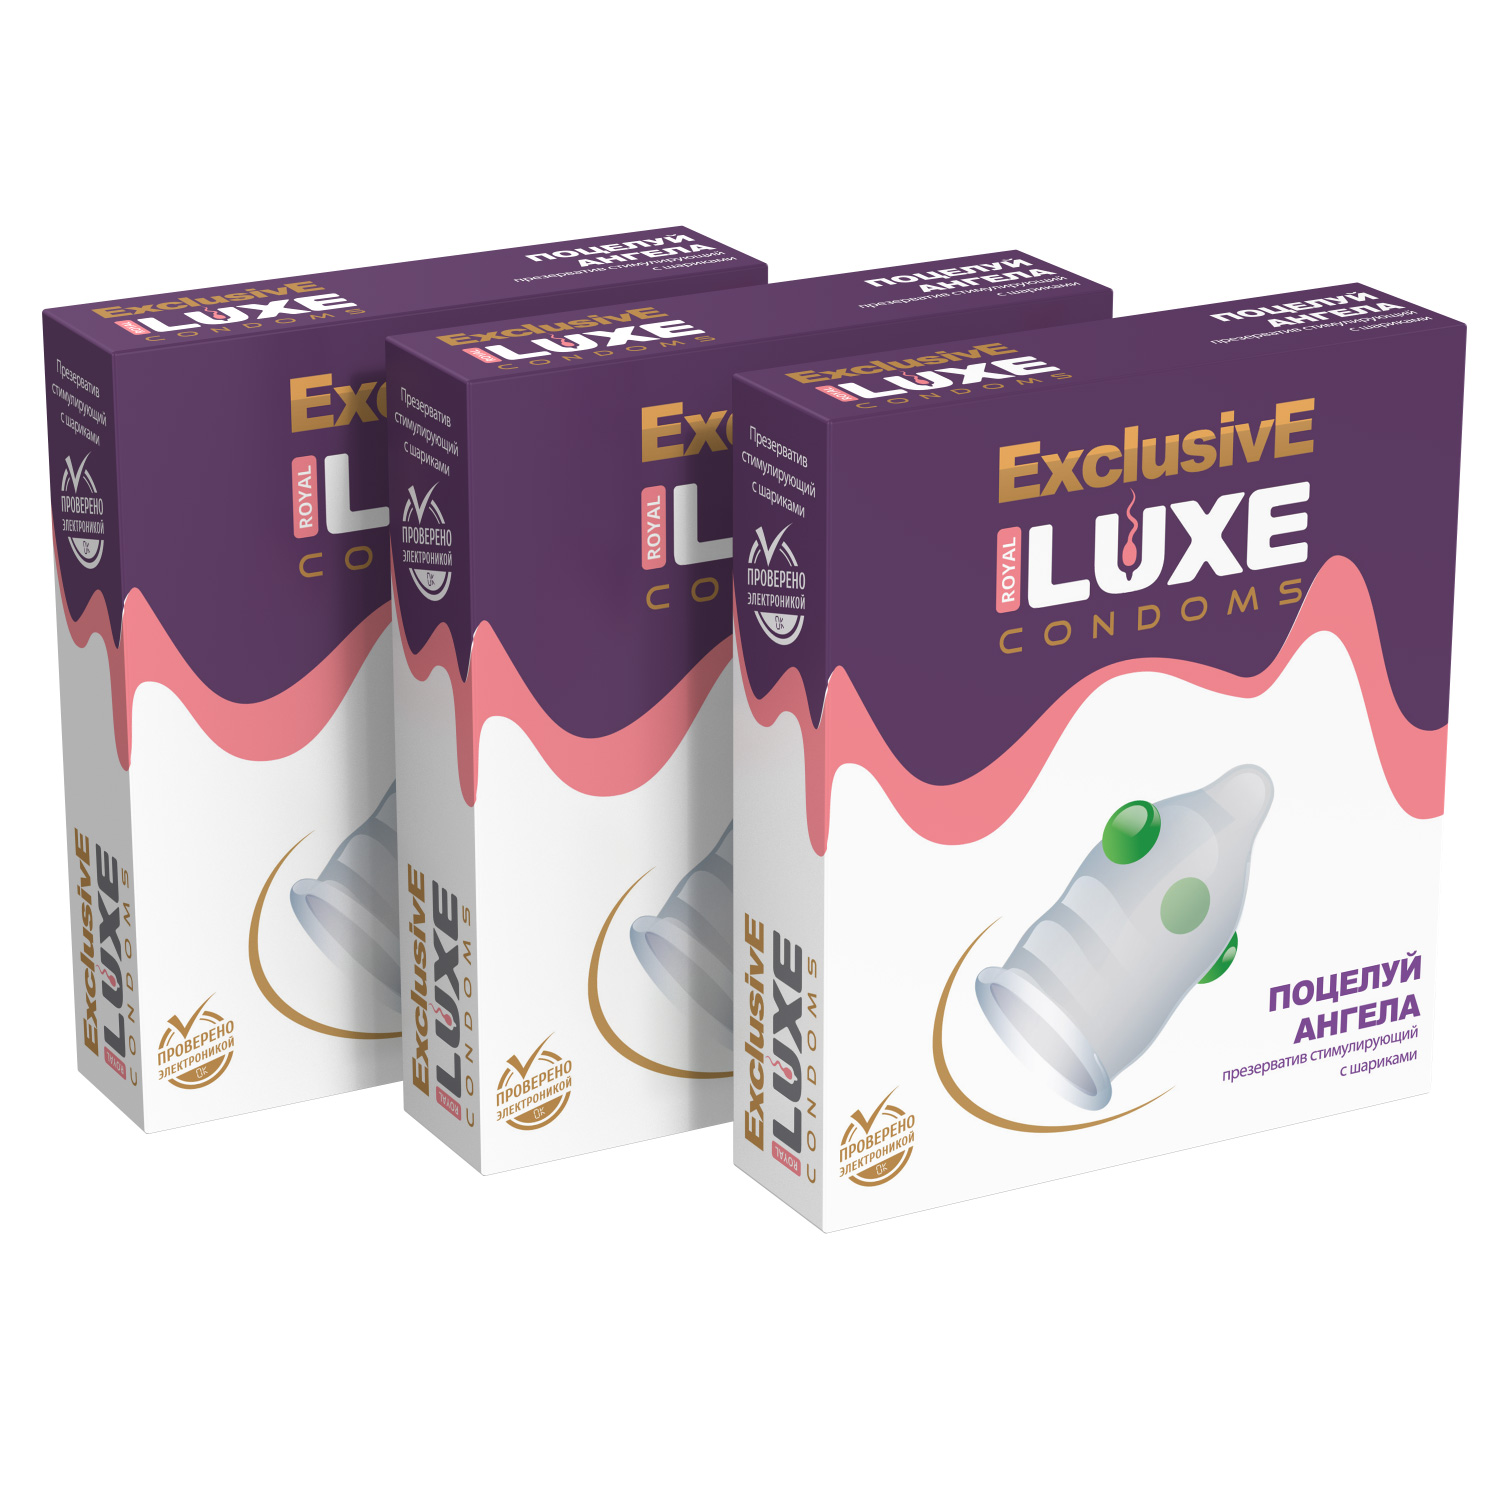 Купить Презервативы Luxe Эксклюзив Поцелуй ангела комплект из 3 упаковок